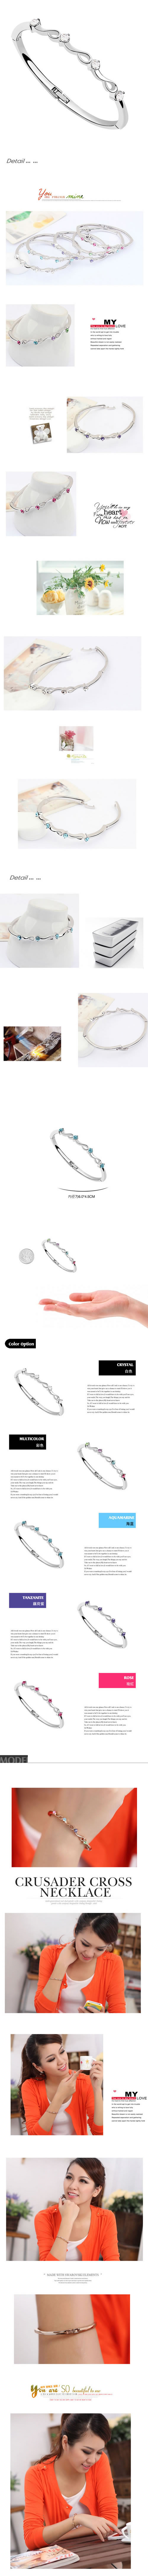 2011 White Bangle Alloy Crystal Bracelets,Crystal Bracelets